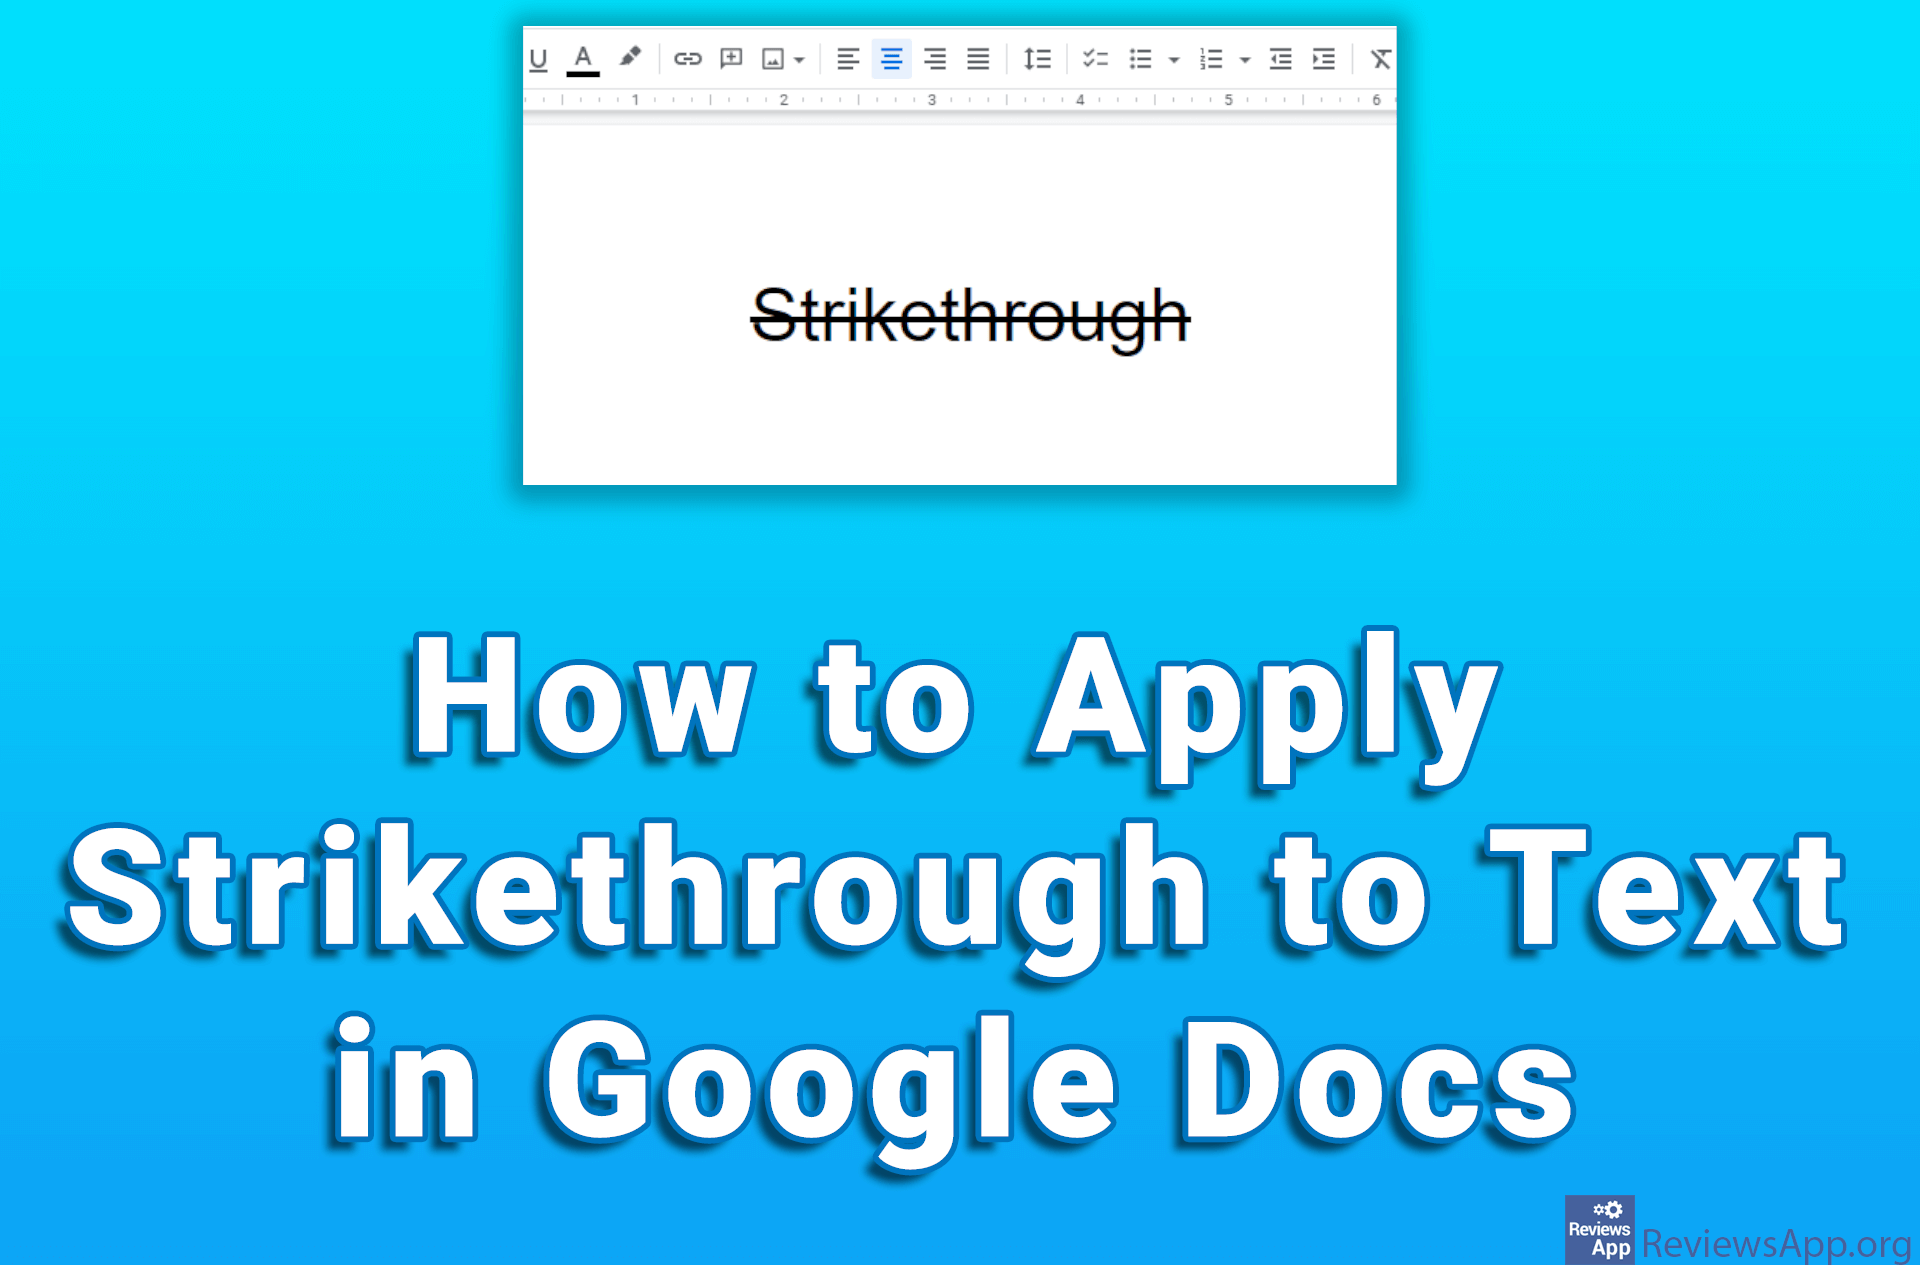 shrotcut for strikethrough google docs